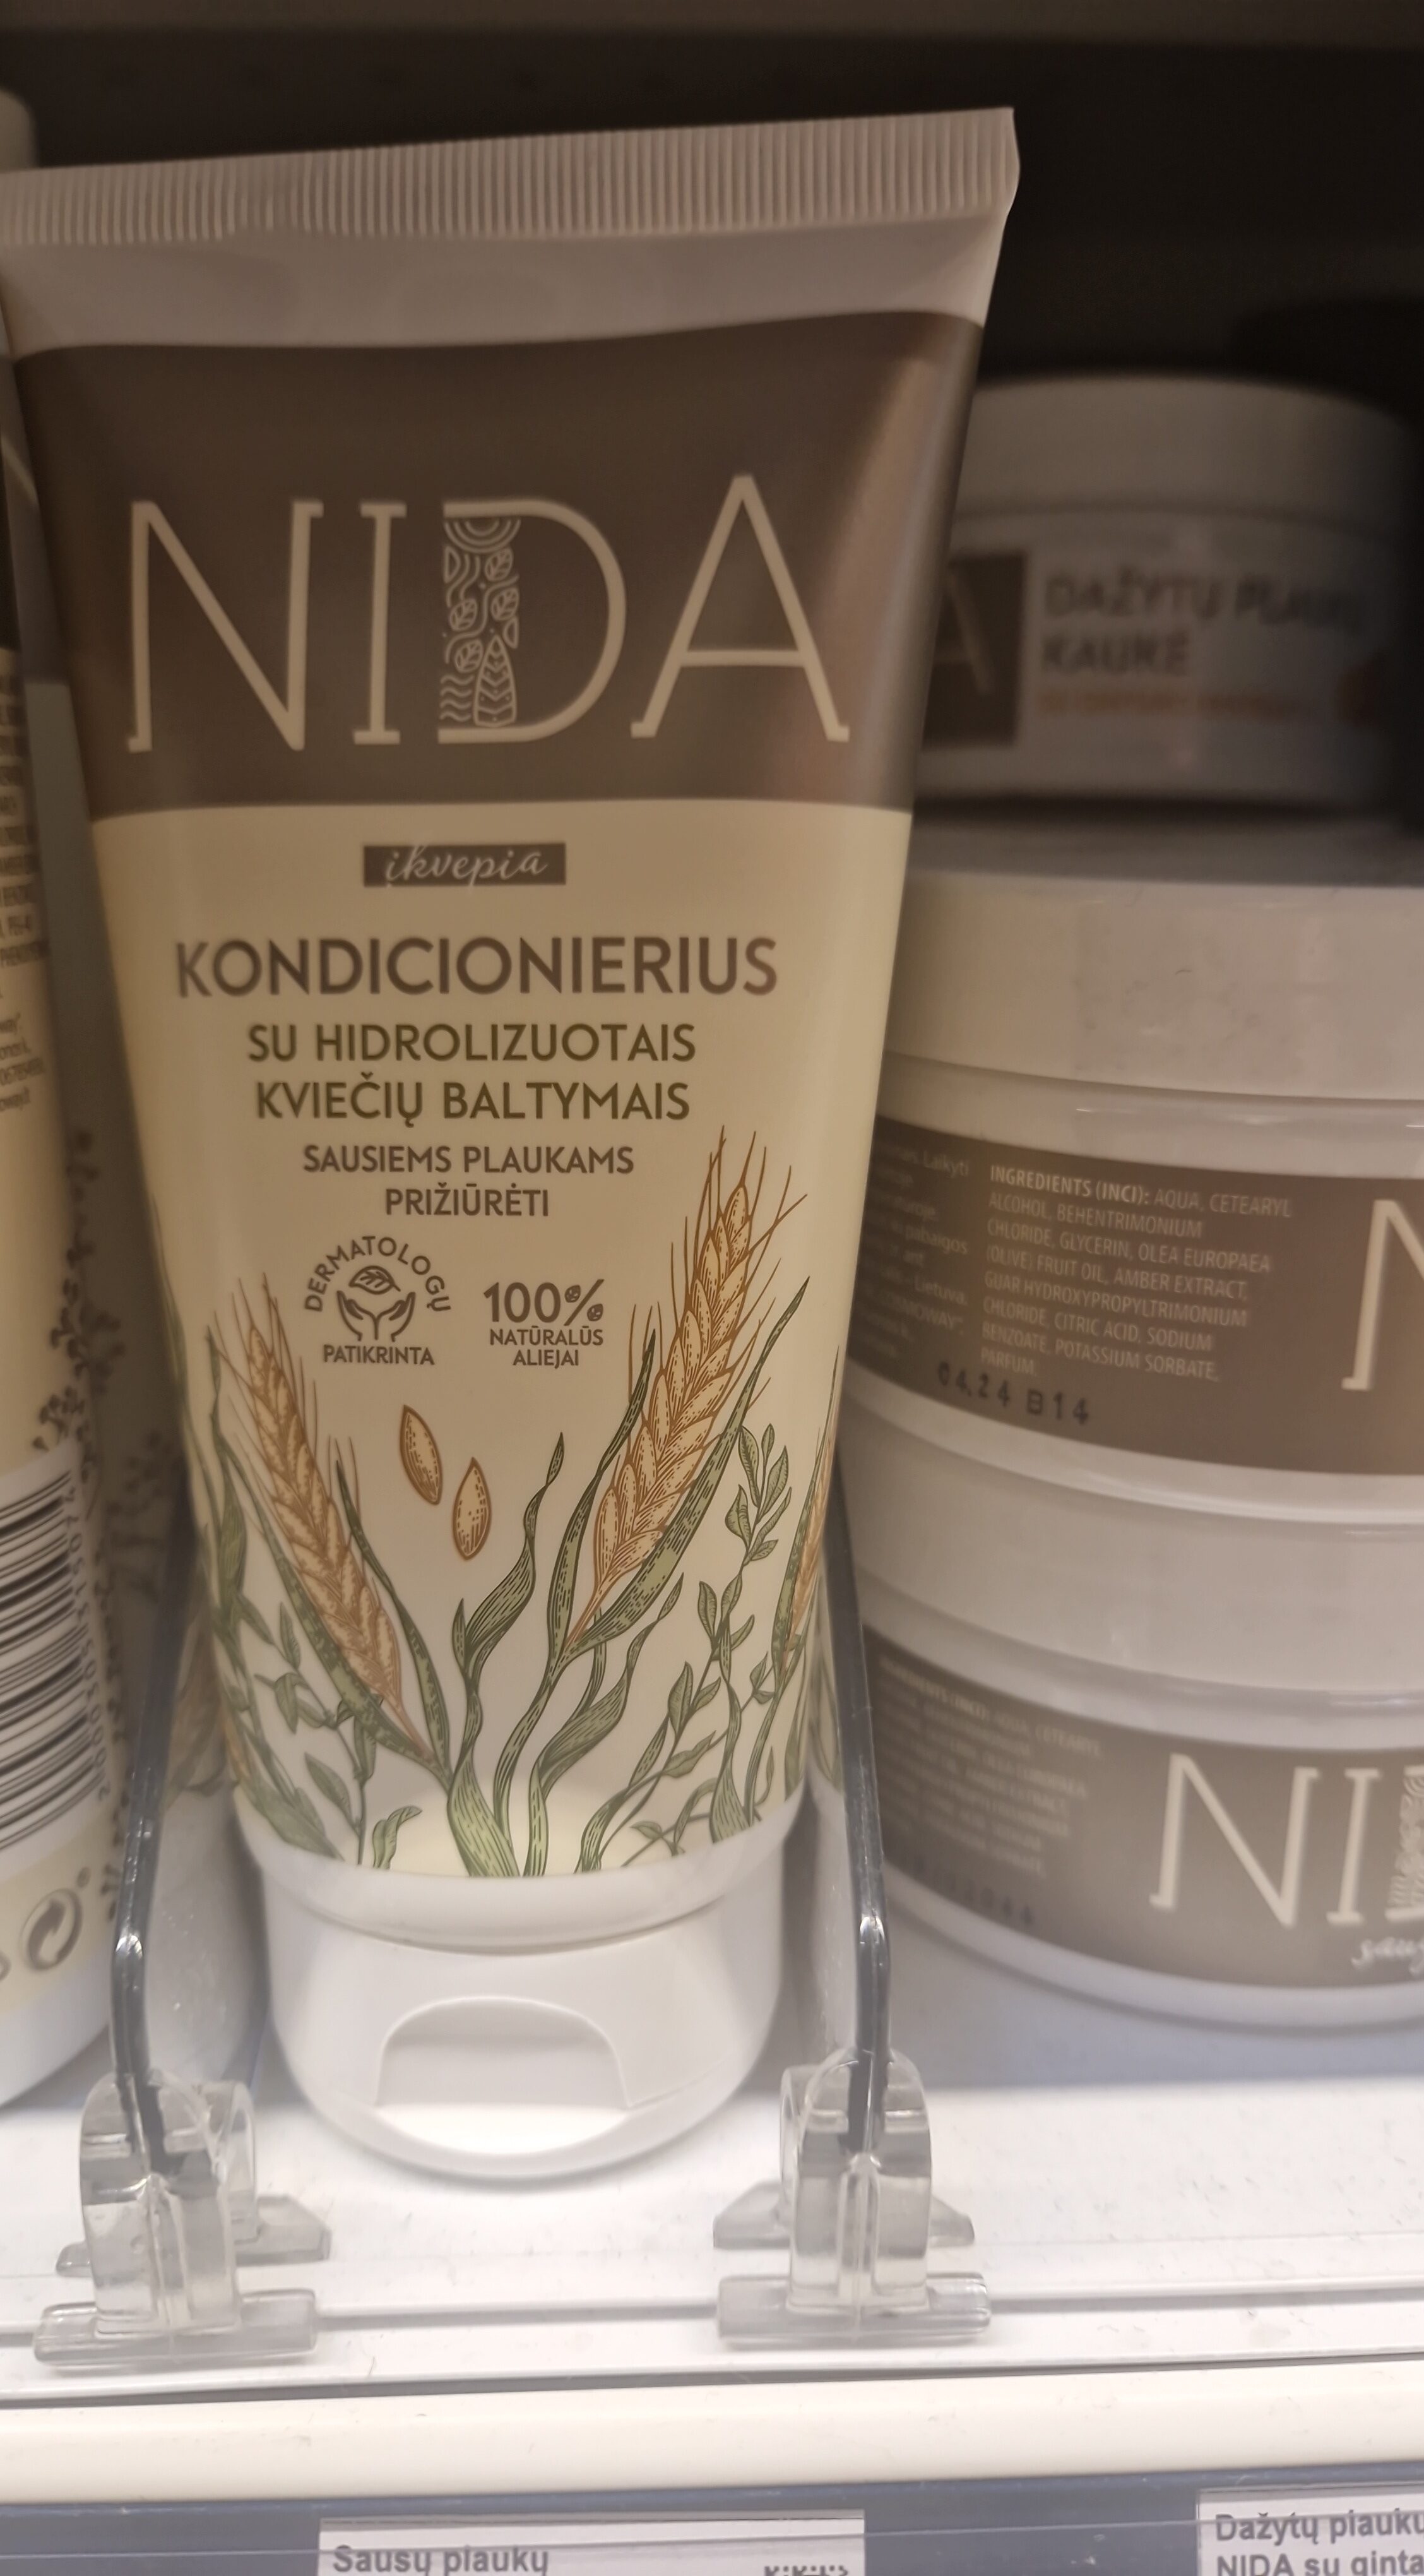 Sausų plaukų kondicionierius NIDA su kviečių baltymais - نتاج - lt